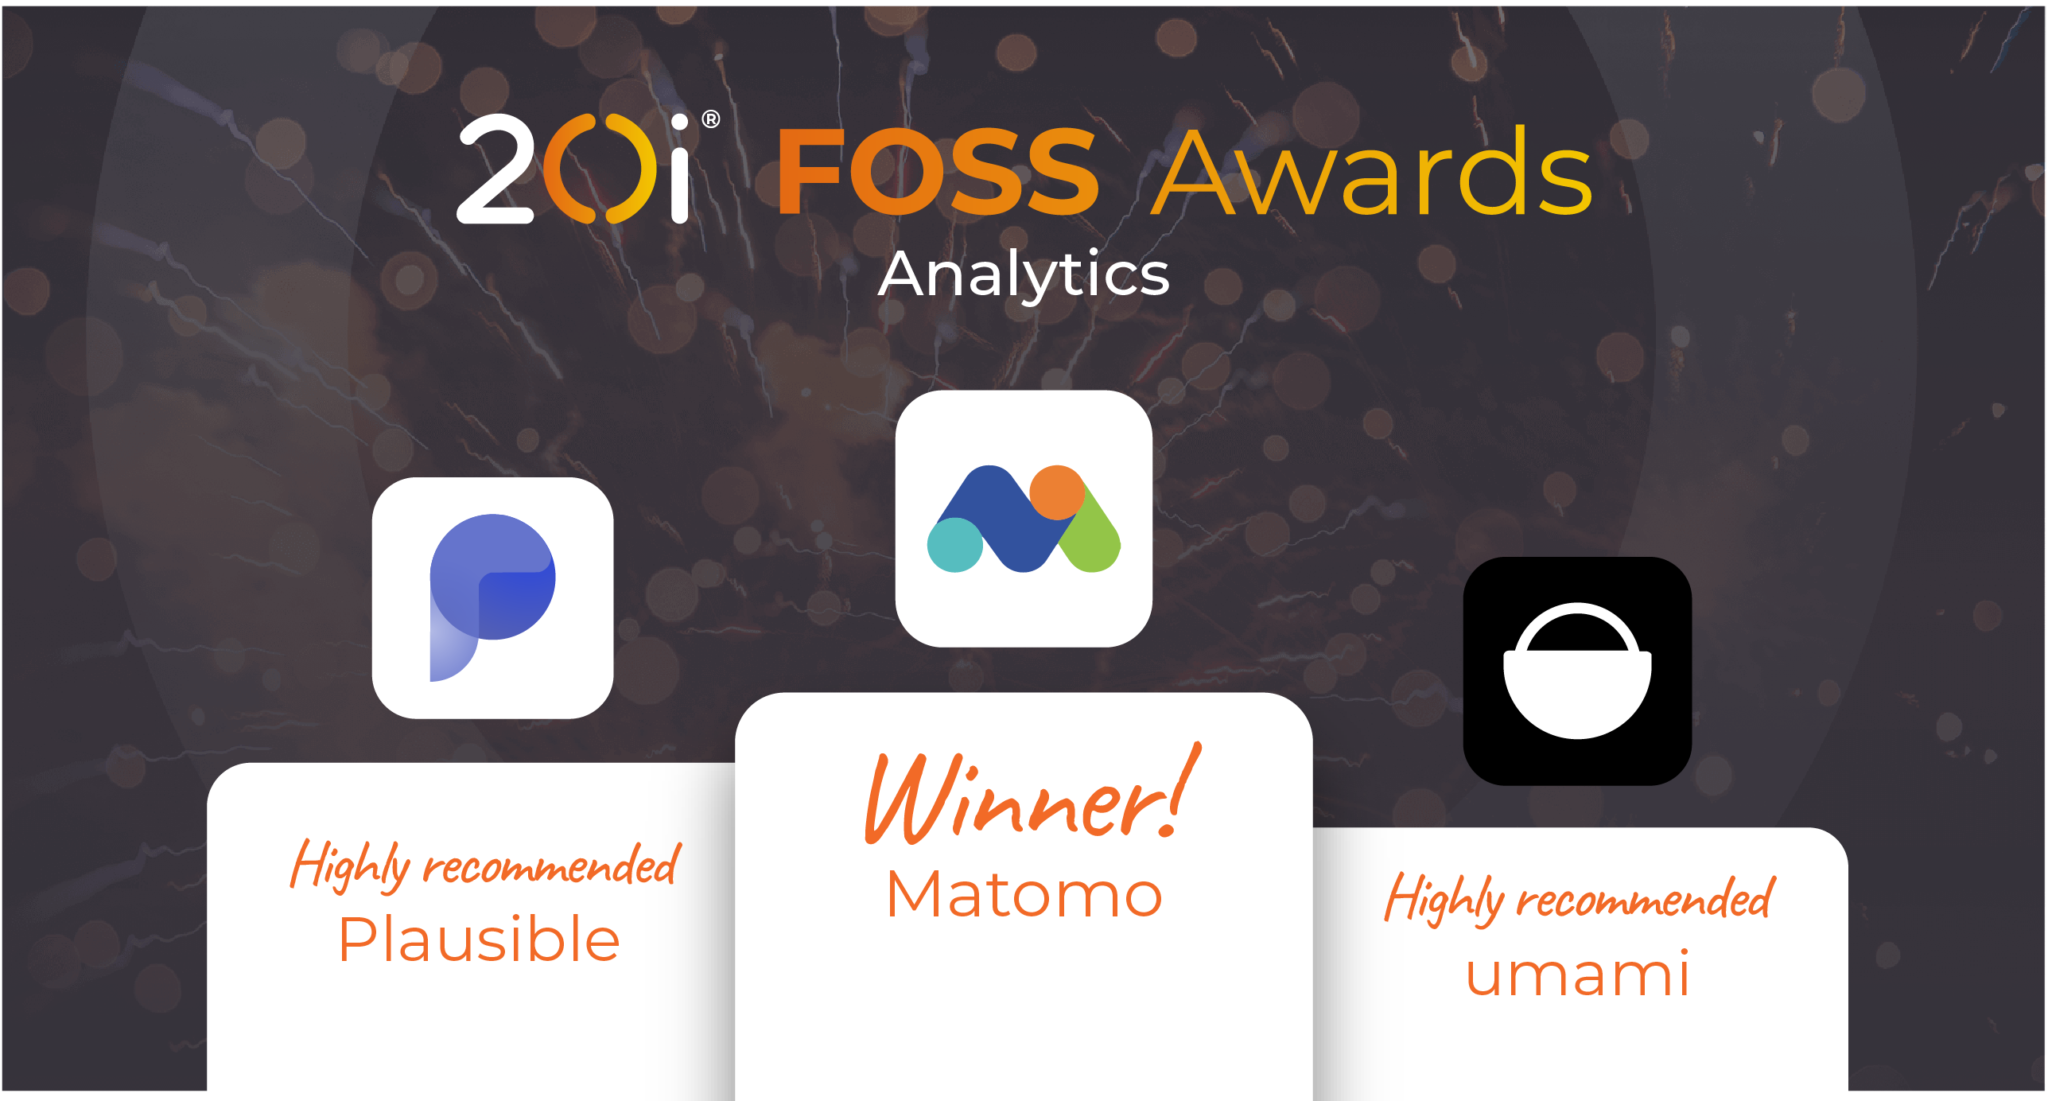 20i foss awards winners 2023 - analytics category